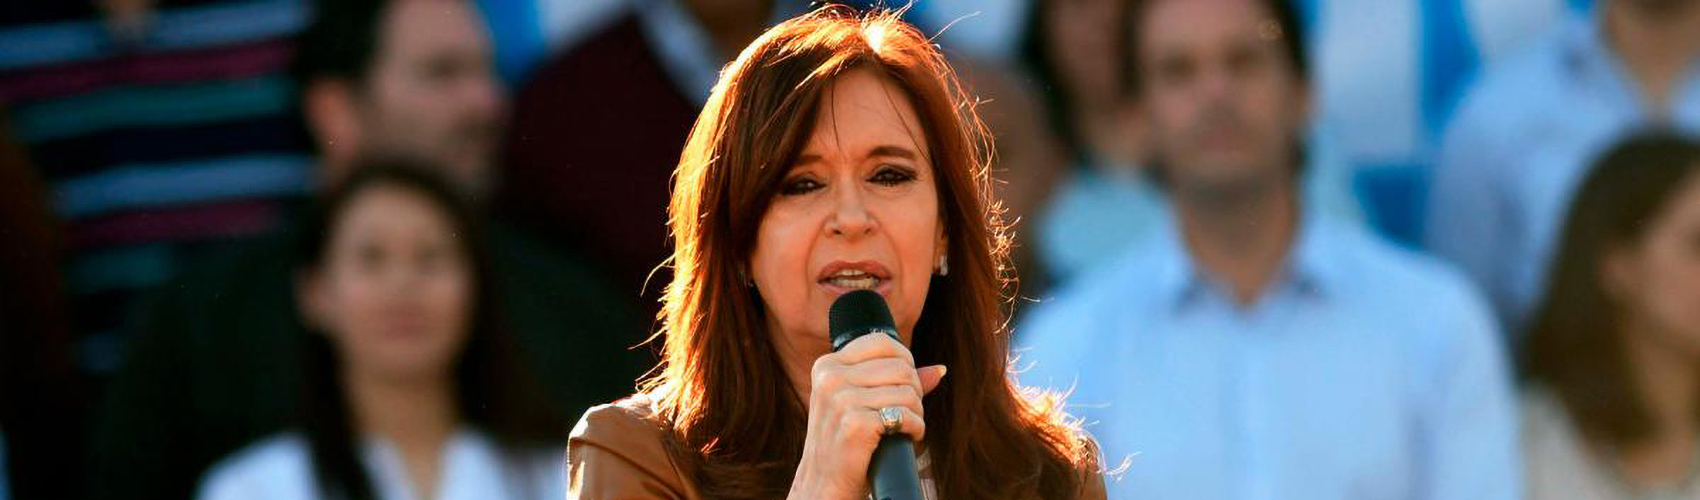 PT e líderes da América Latina denunciam lawfare contra Kirchner: "vingança política"